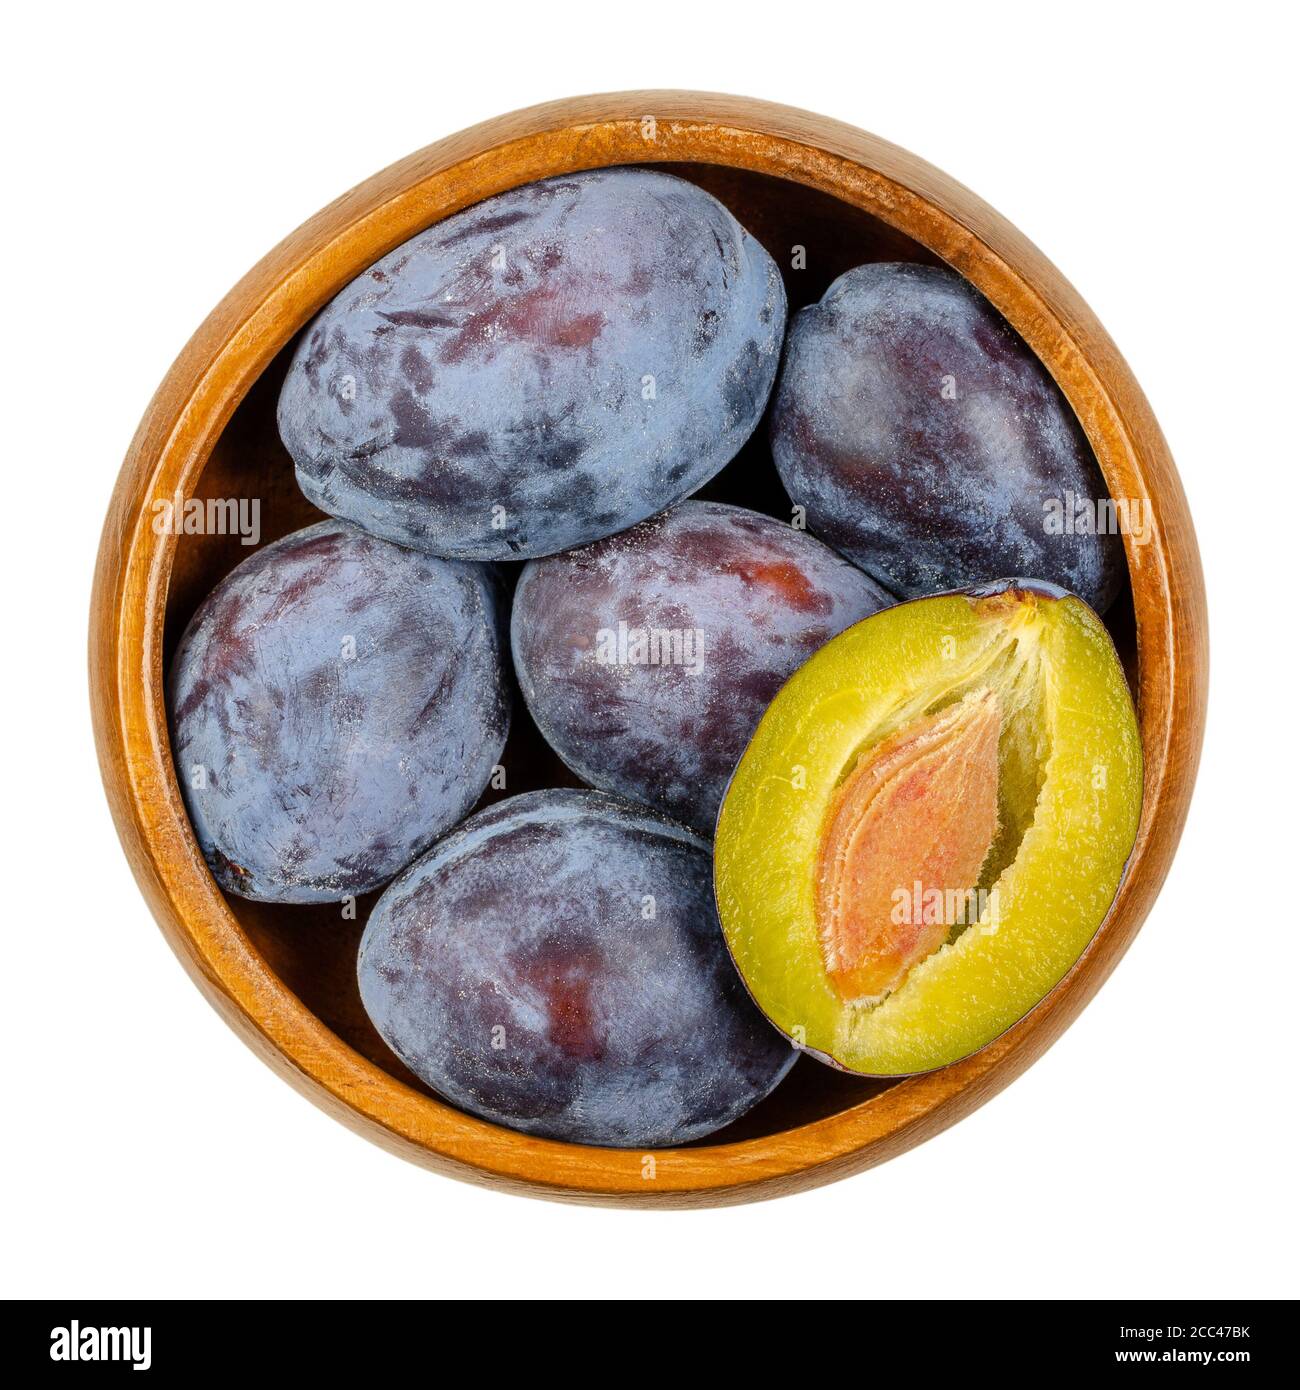 Prugne europee mature con sezione trasversale di un frutto in una ciotola di legno. Frutta di pietra con la pelle viola, viola e nera, chiamata anche Damson. Foto Stock